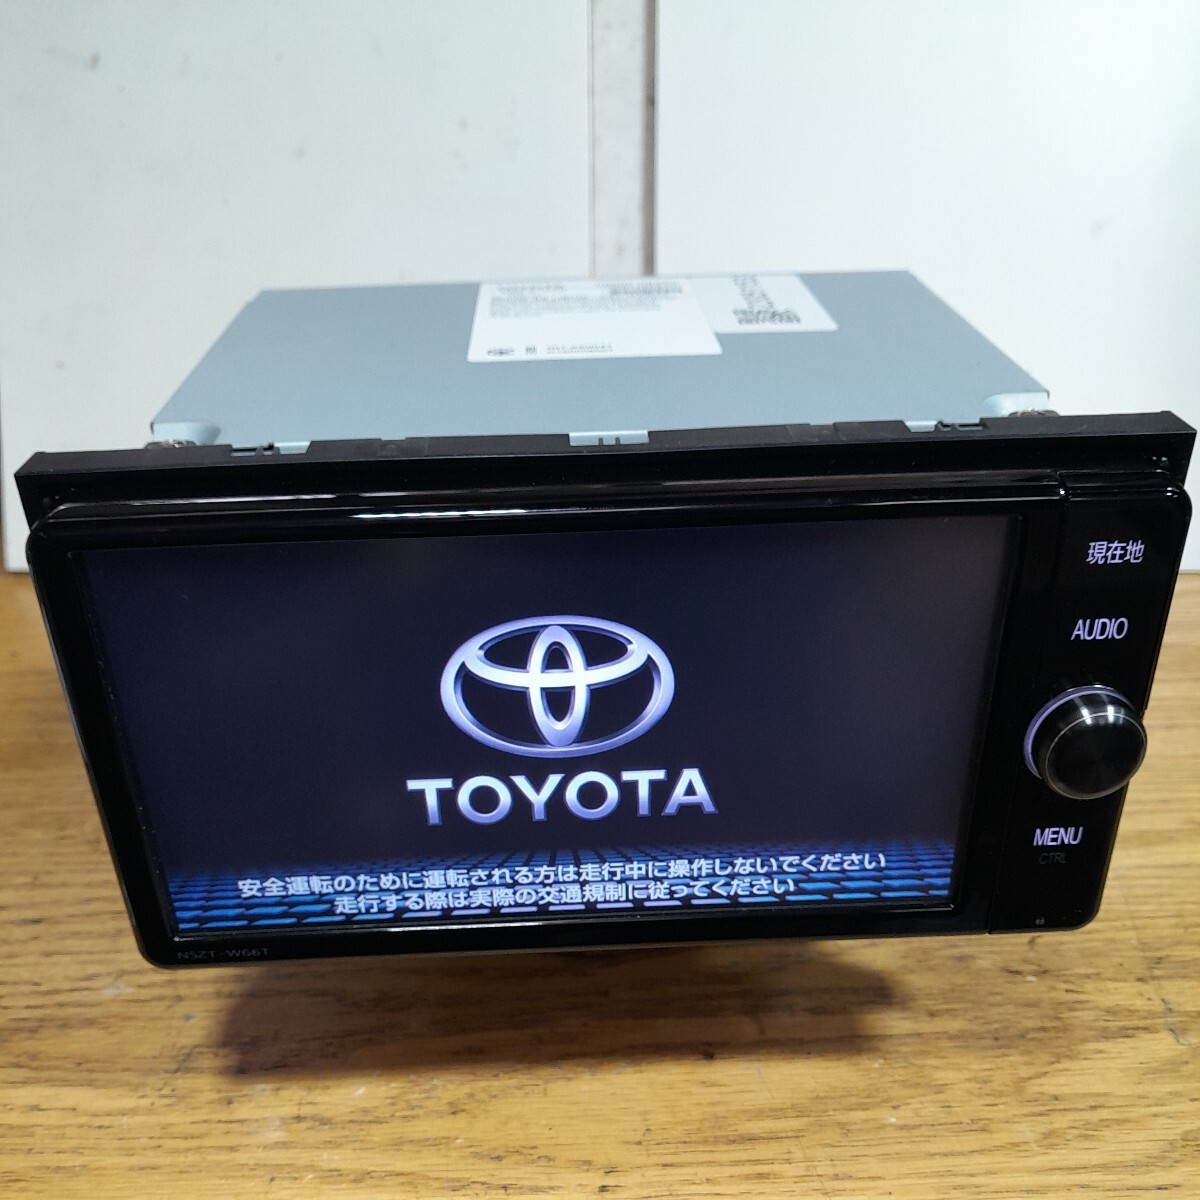  Toyota оригинальная навигация NSZT-W66T 2017 год осенний выпуск карта данные ( контрольный номер :23051153)